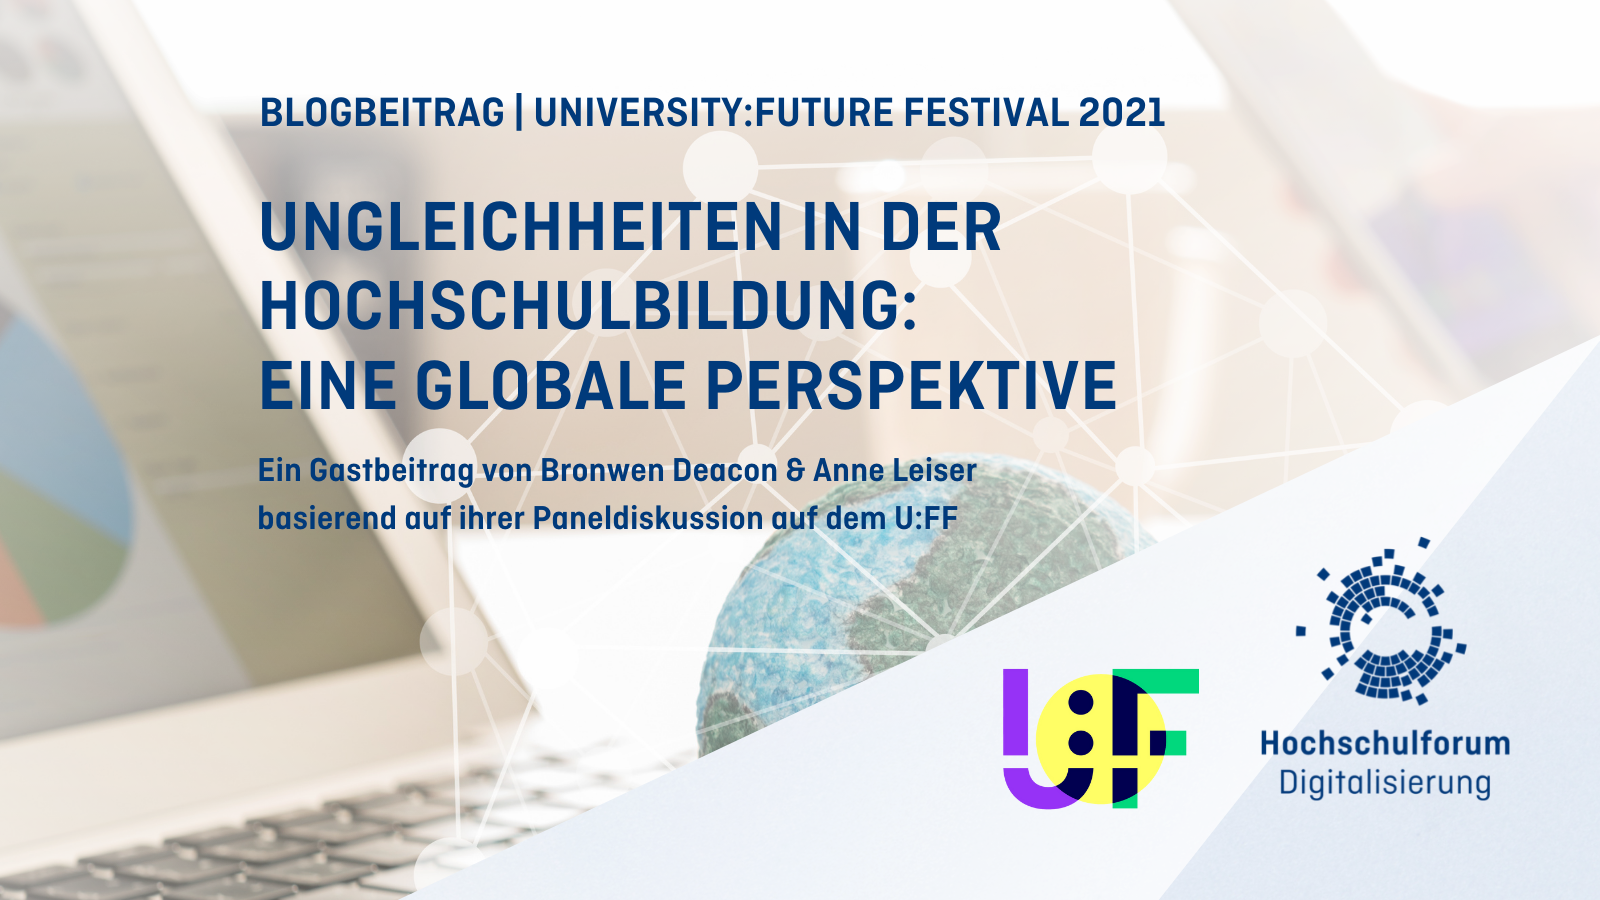 Titel und Autoren des Textes; Logos von HFD und University:Future Festival; Im Hintergrund: Eine Weltkugel neben einem Laptop, der von einem Netz aus miteinander verbundenen Linien umgeben ist.